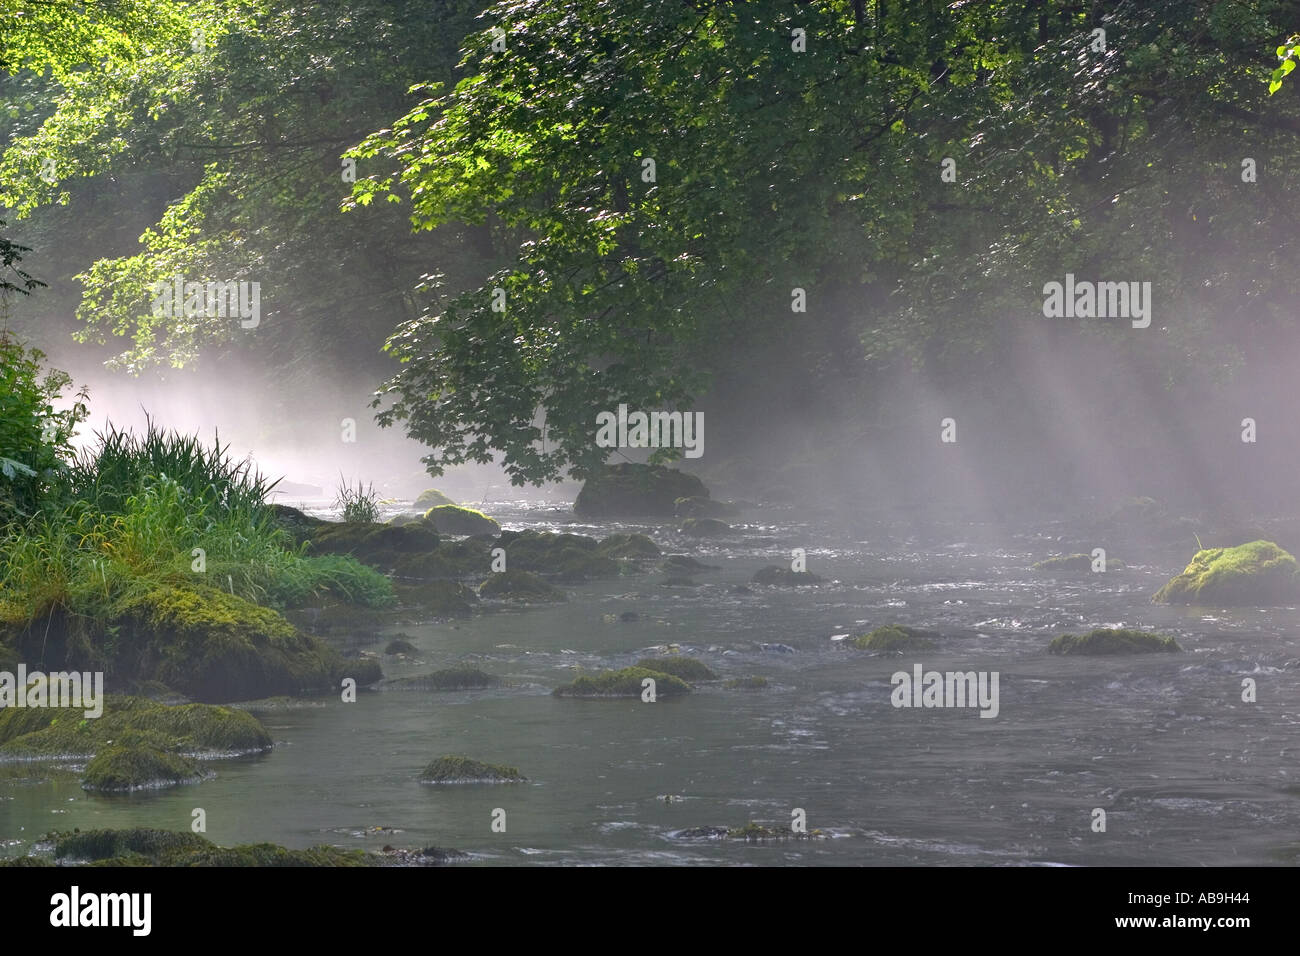 river in mist, Germany, Vogtland, Jocketa, Jun 04. Stock Photo